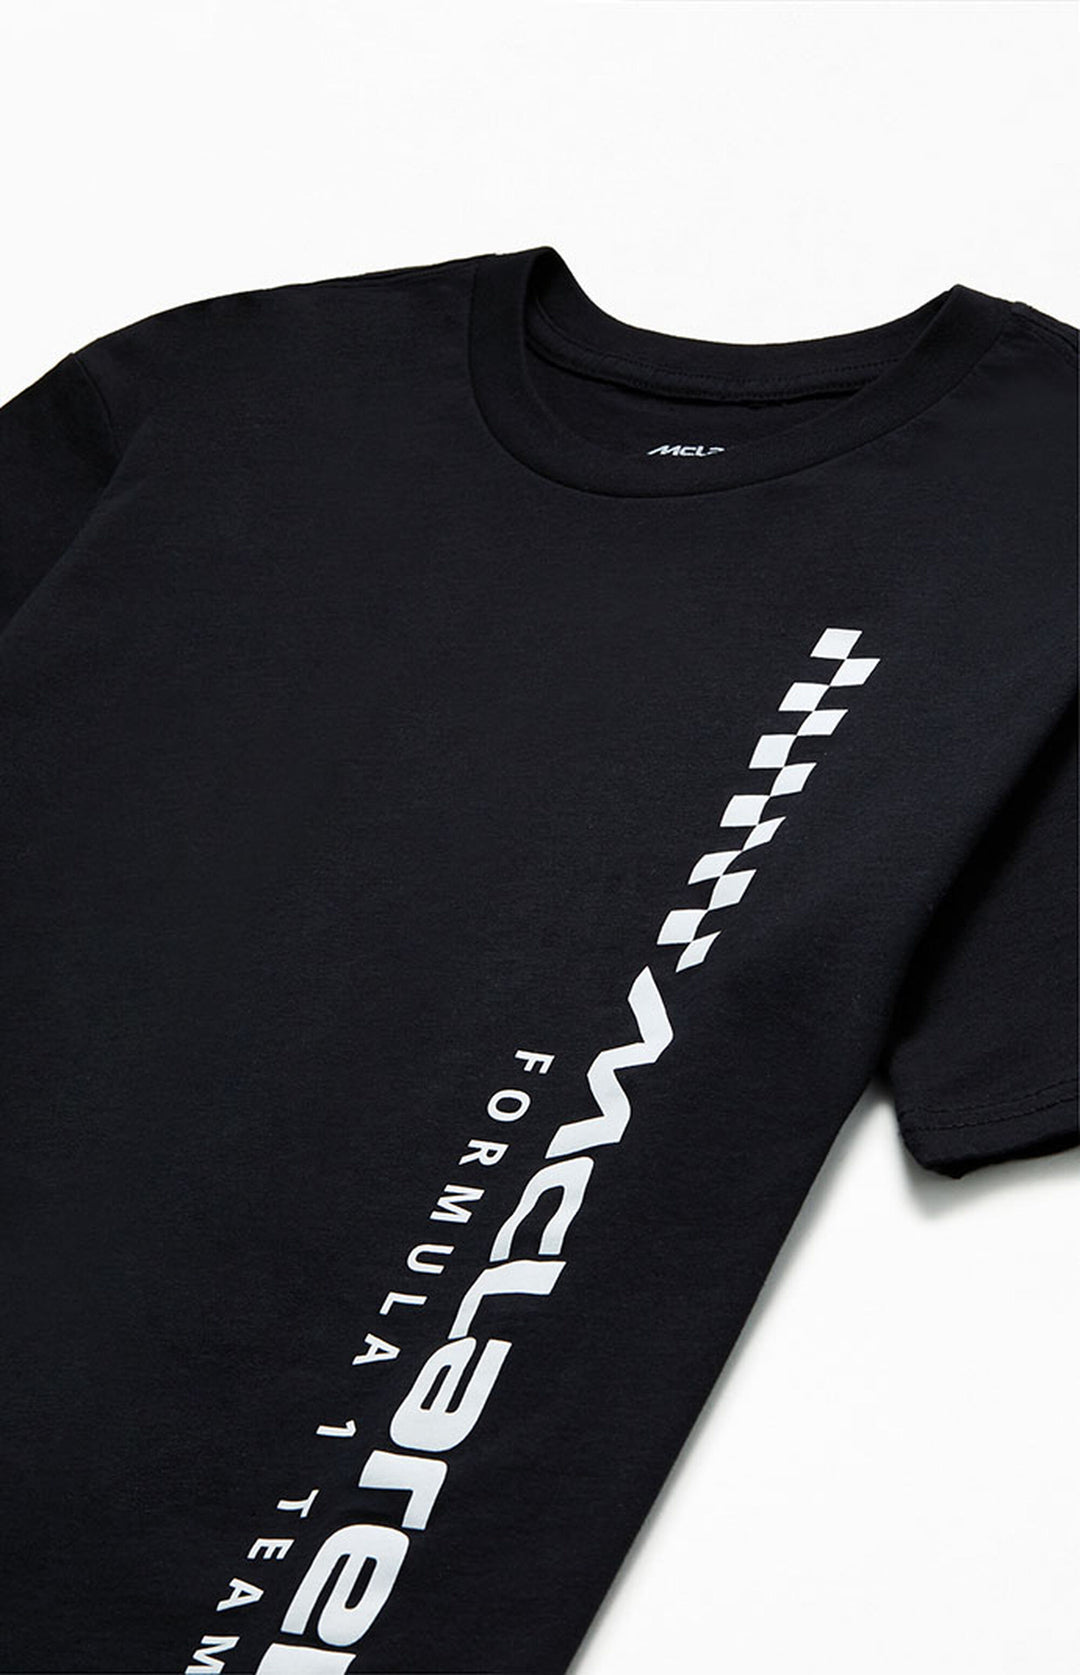 T-shirt McLaren Formula 1™ Team - Unisexe - Noir